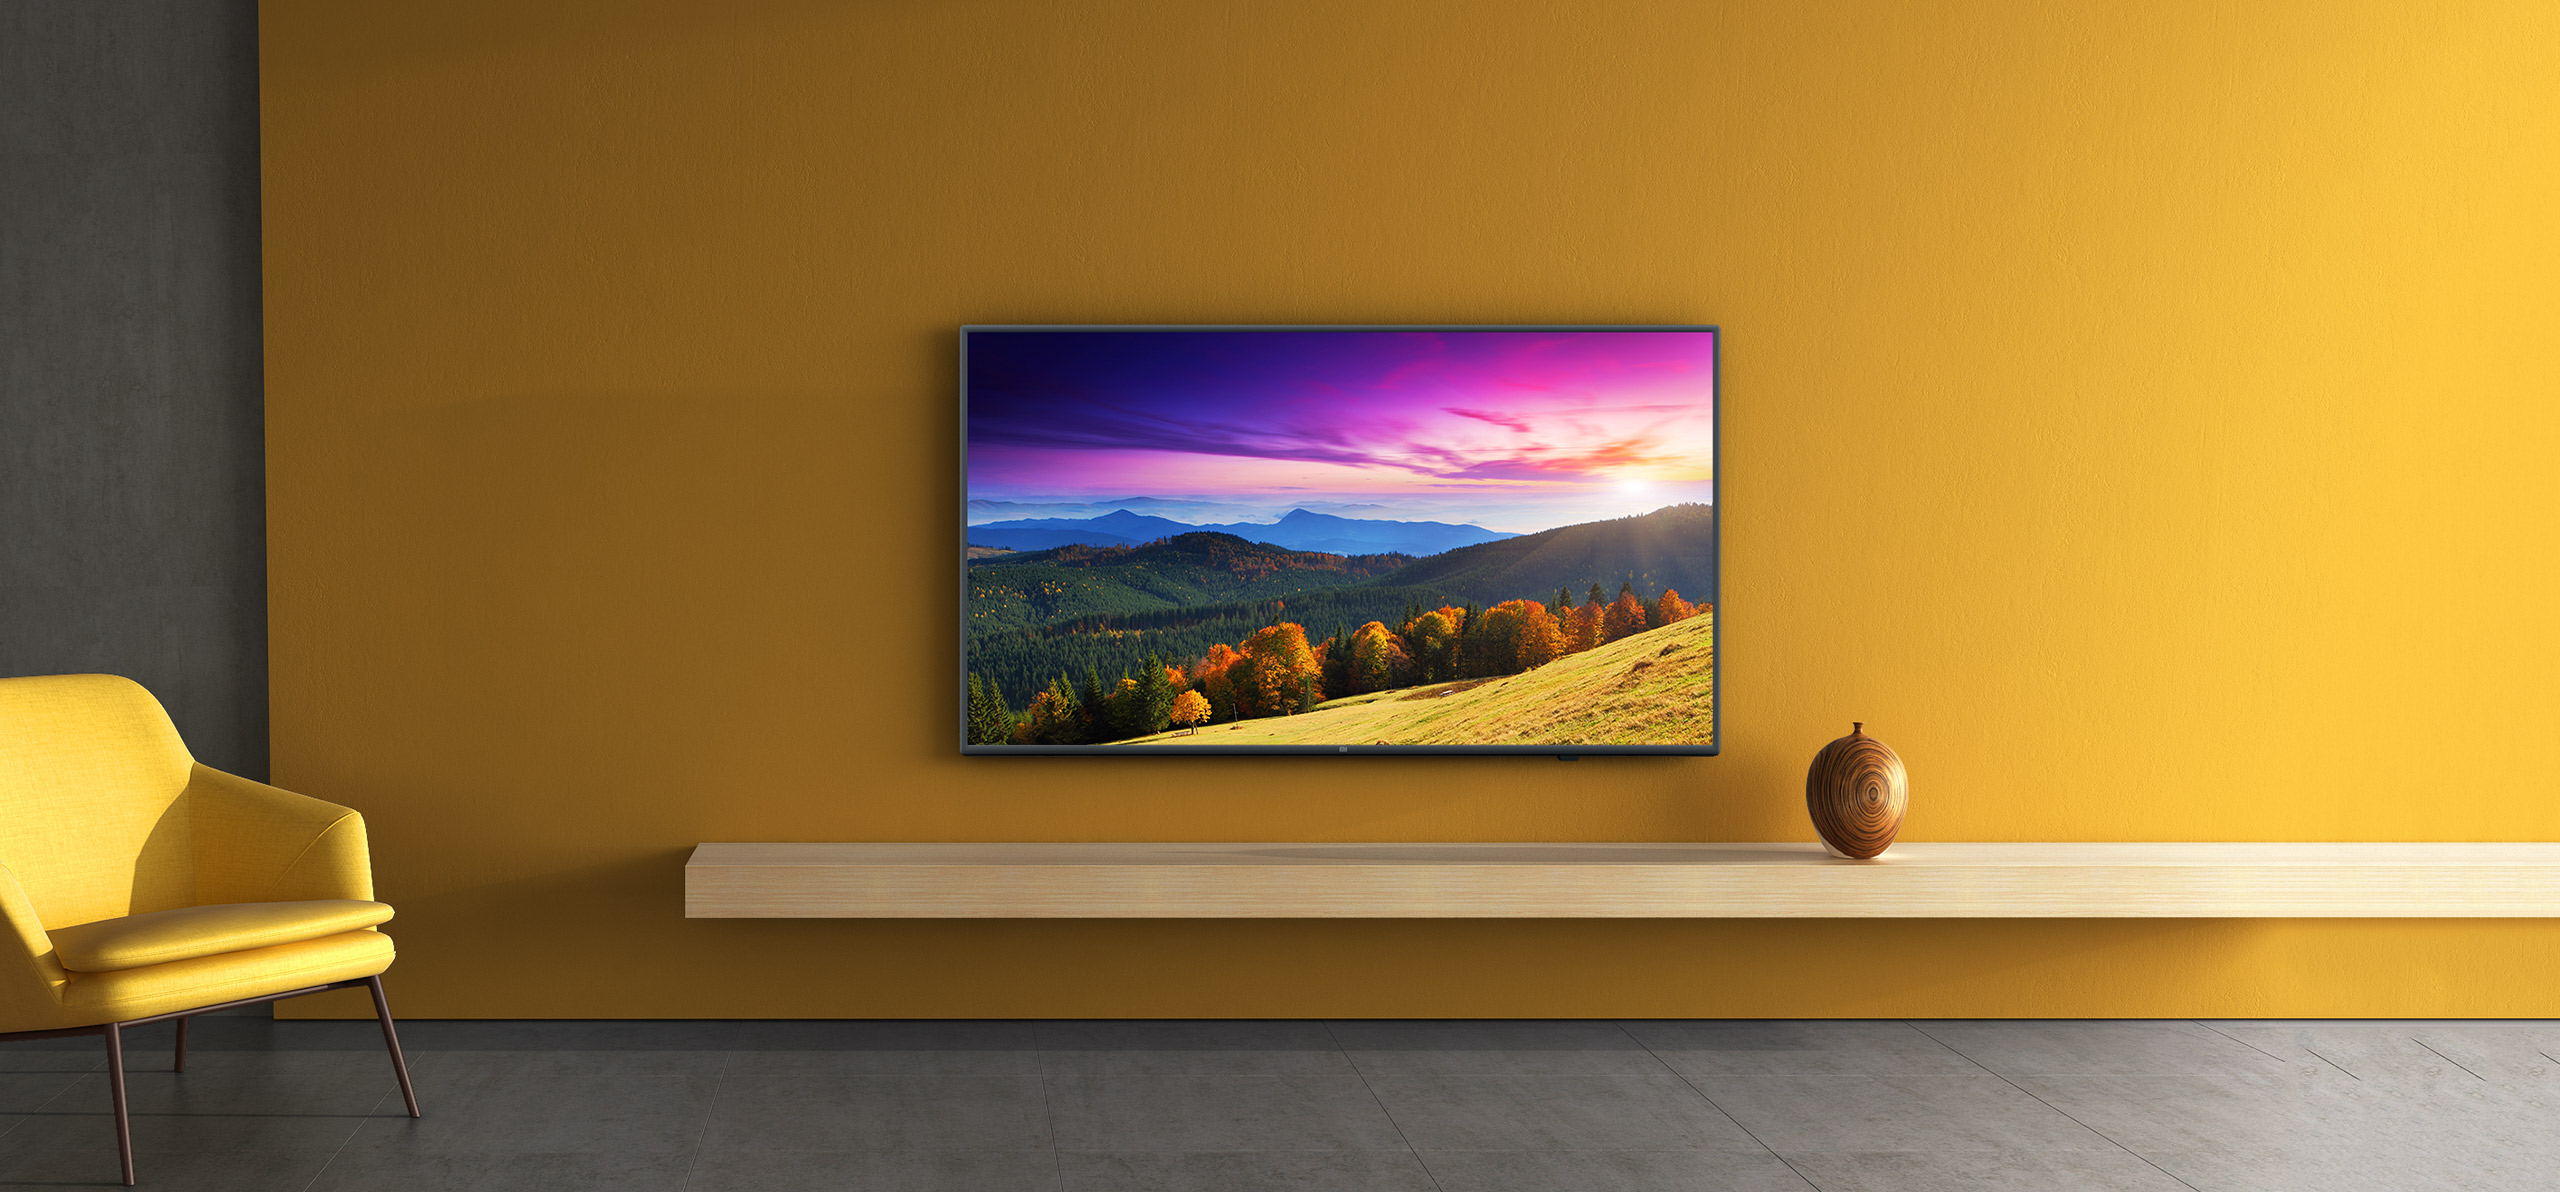 小米电视机价格表55寸多少钱55寸小米电视机测评及报价